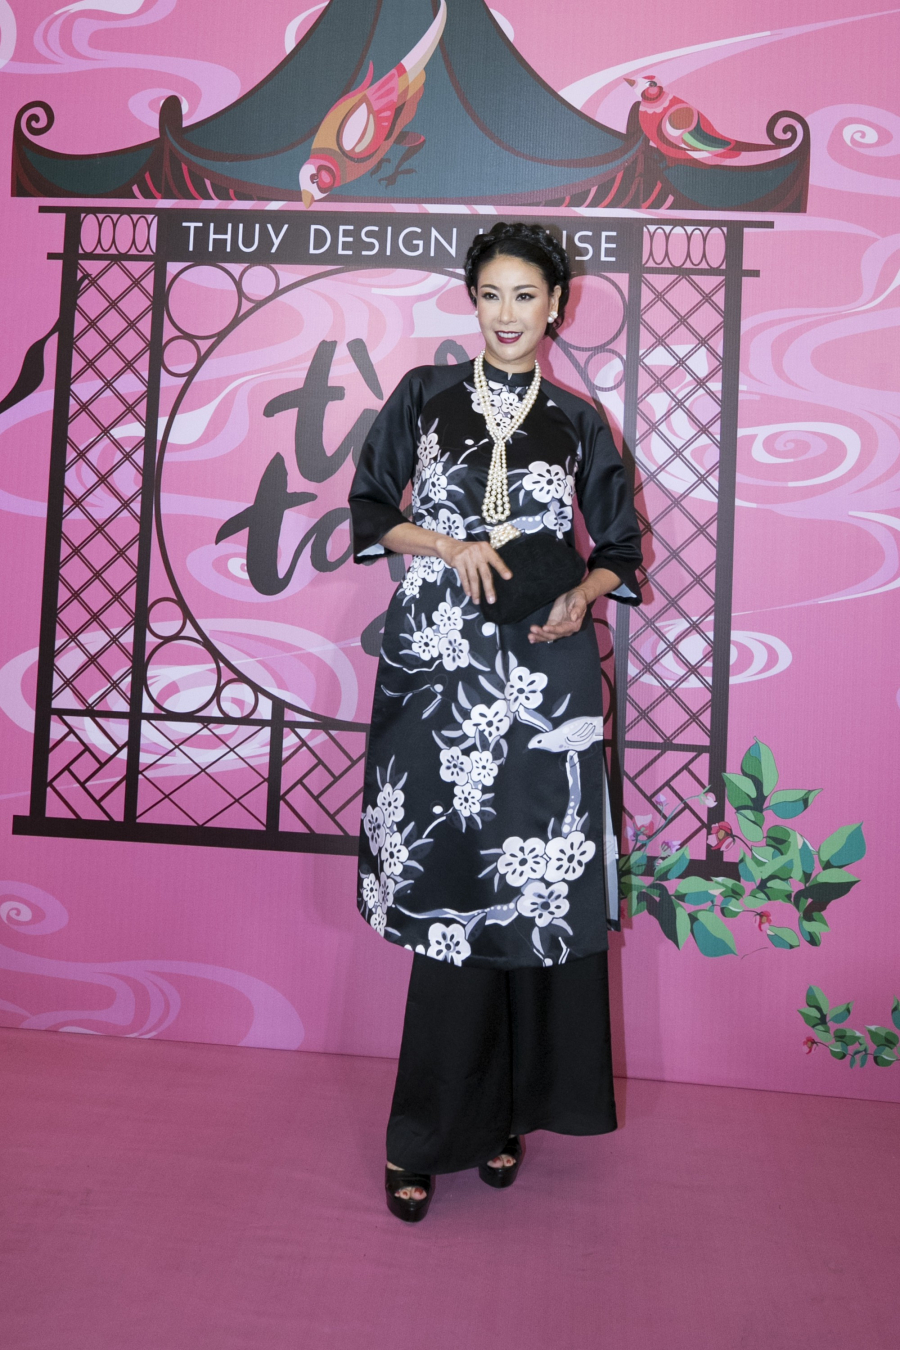 Hoa hậu Hà Kiều Anh phối trang phục, phụ kiện phong cách sang trọng, cổ điển đi xem thời trang.    